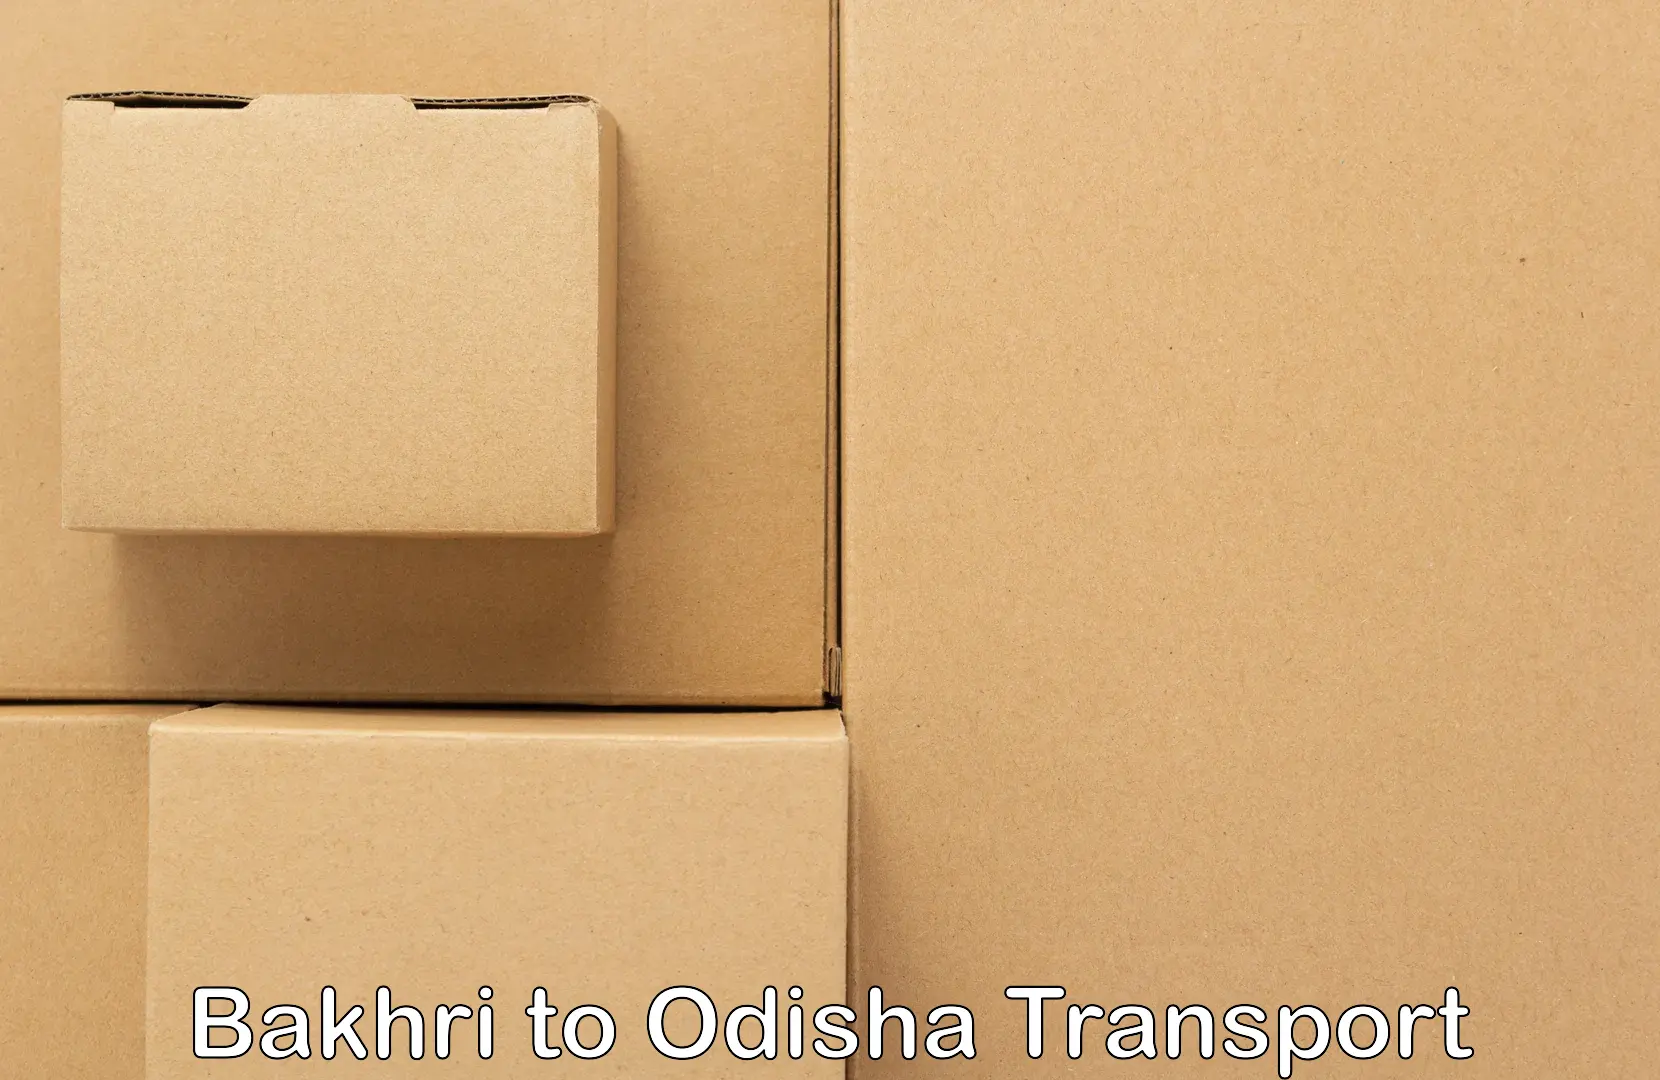 Vehicle transport services Bakhri to Odisha